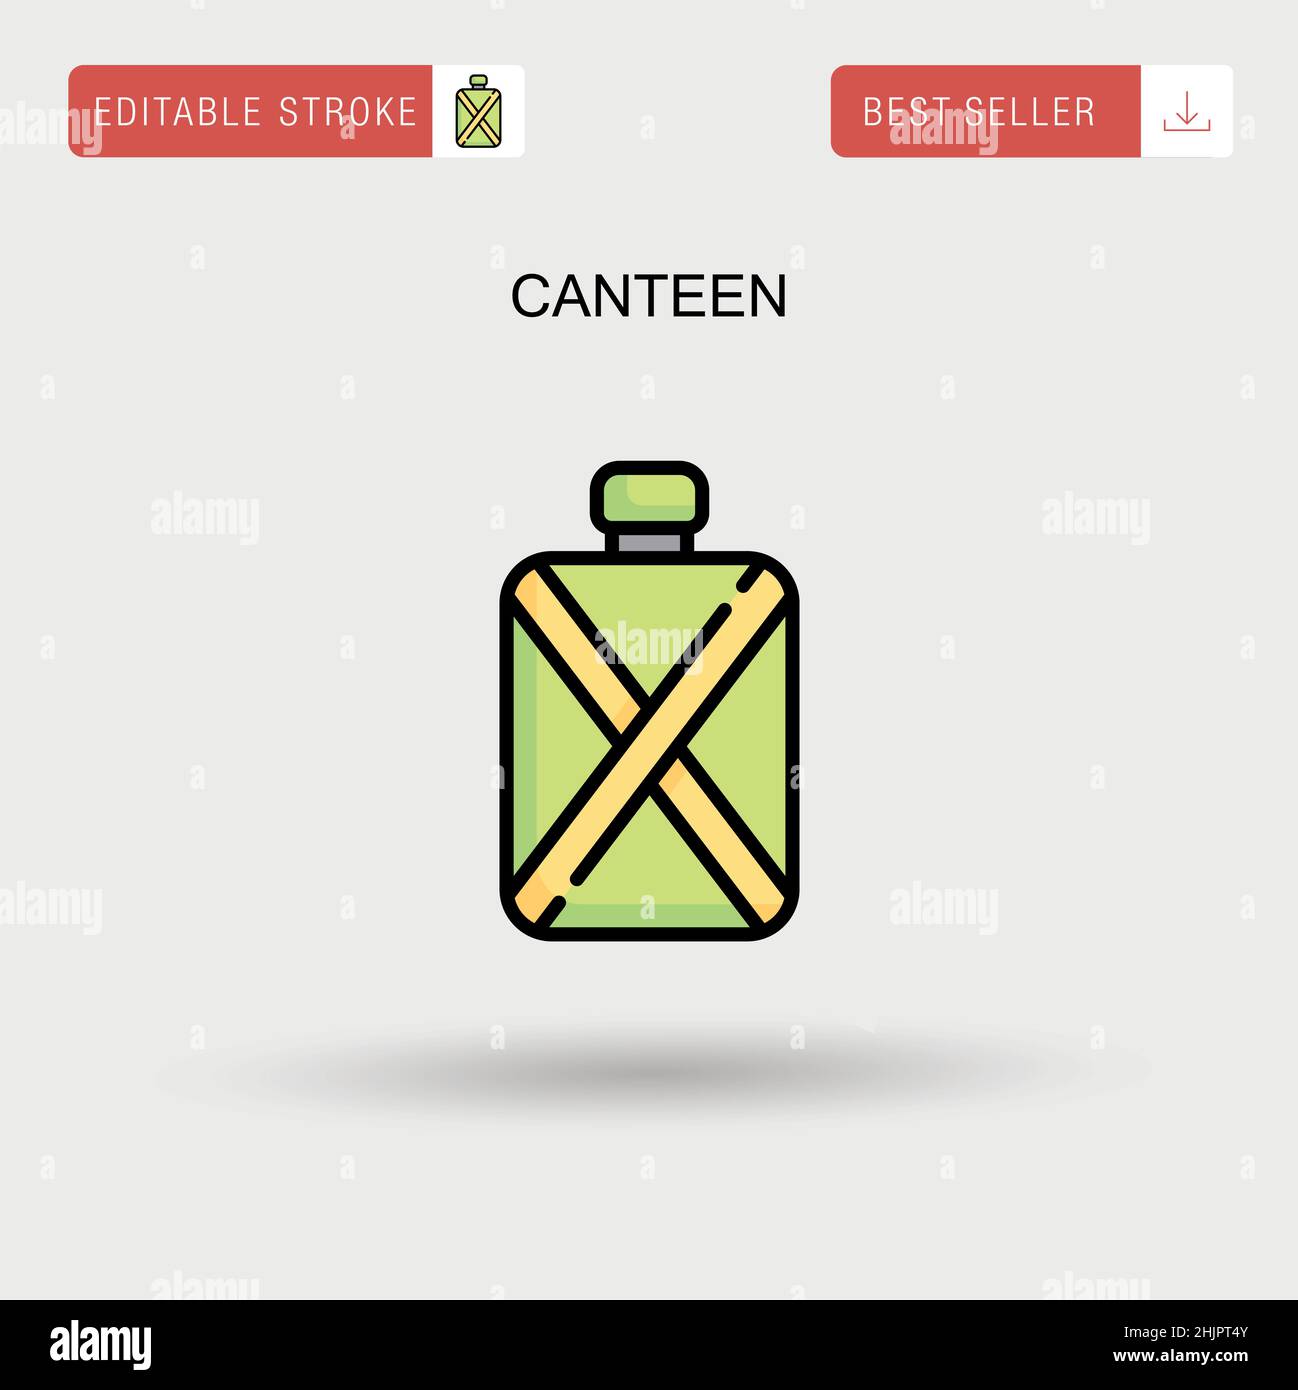 Canteen Simple vector icon. Stock Vector